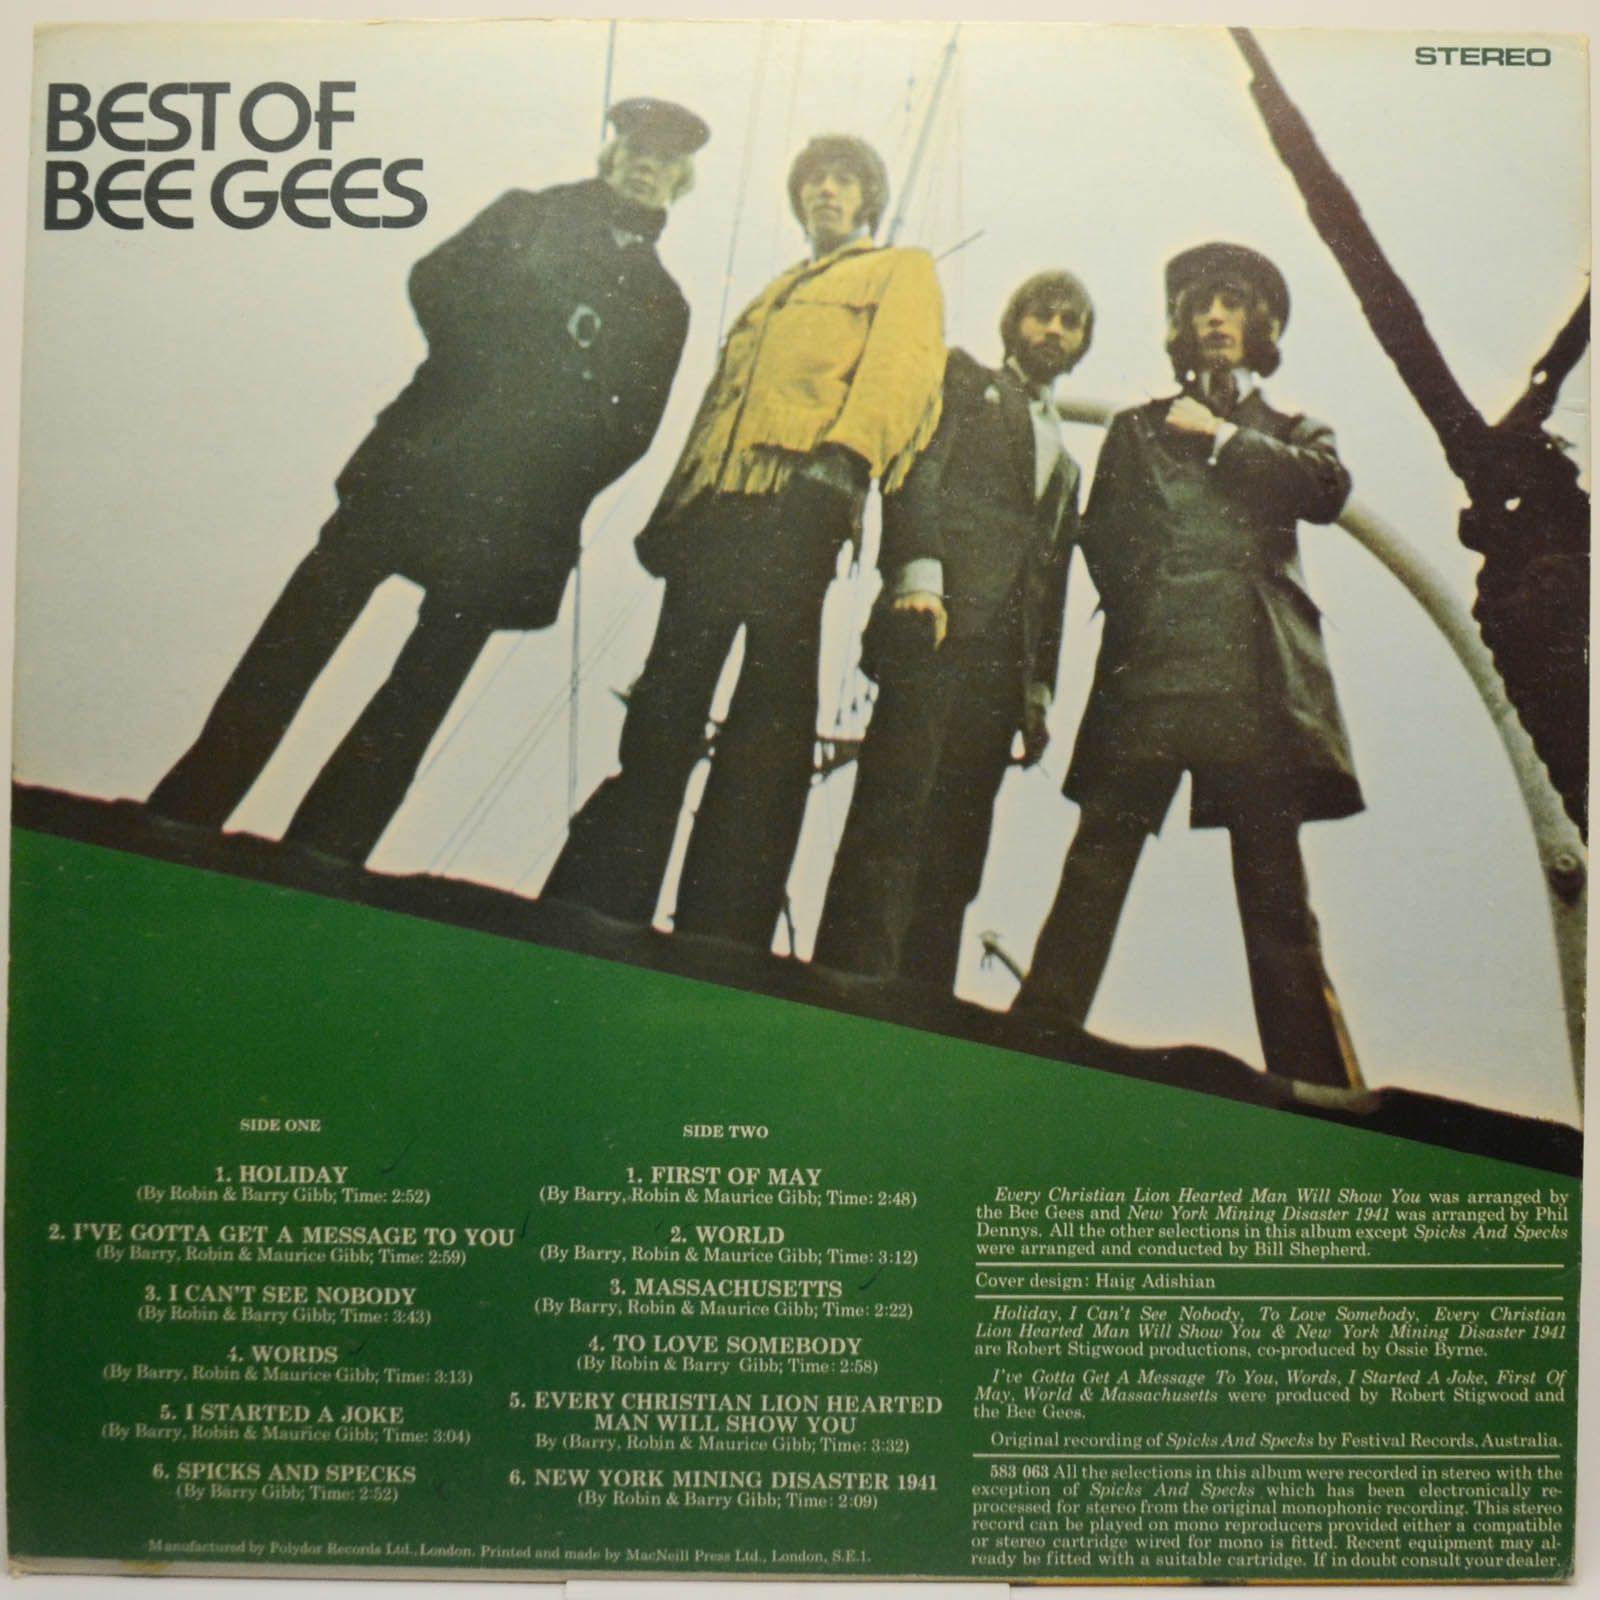 Bee Gees — Best Of Bee Gees (1-st, UK), 1969